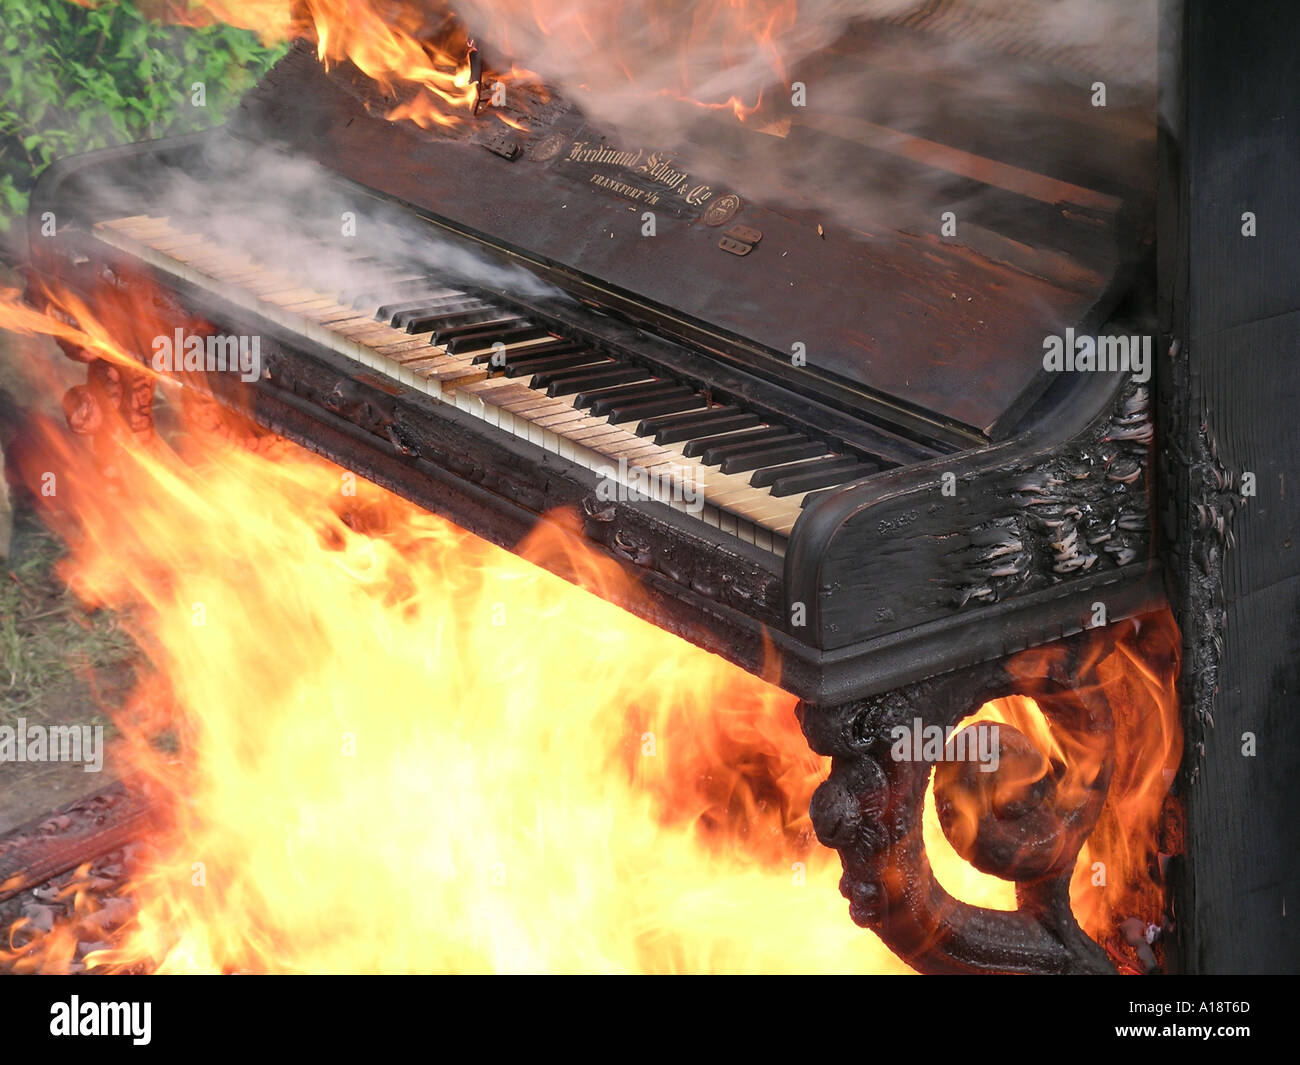 Sie verfügt über ein brennendes Klavier in Flammen, ein Freund von mir, der  ein Klavierbauer Klaviere bekommt, die nicht mehr zu reparieren das Feuer  Stockfotografie - Alamy